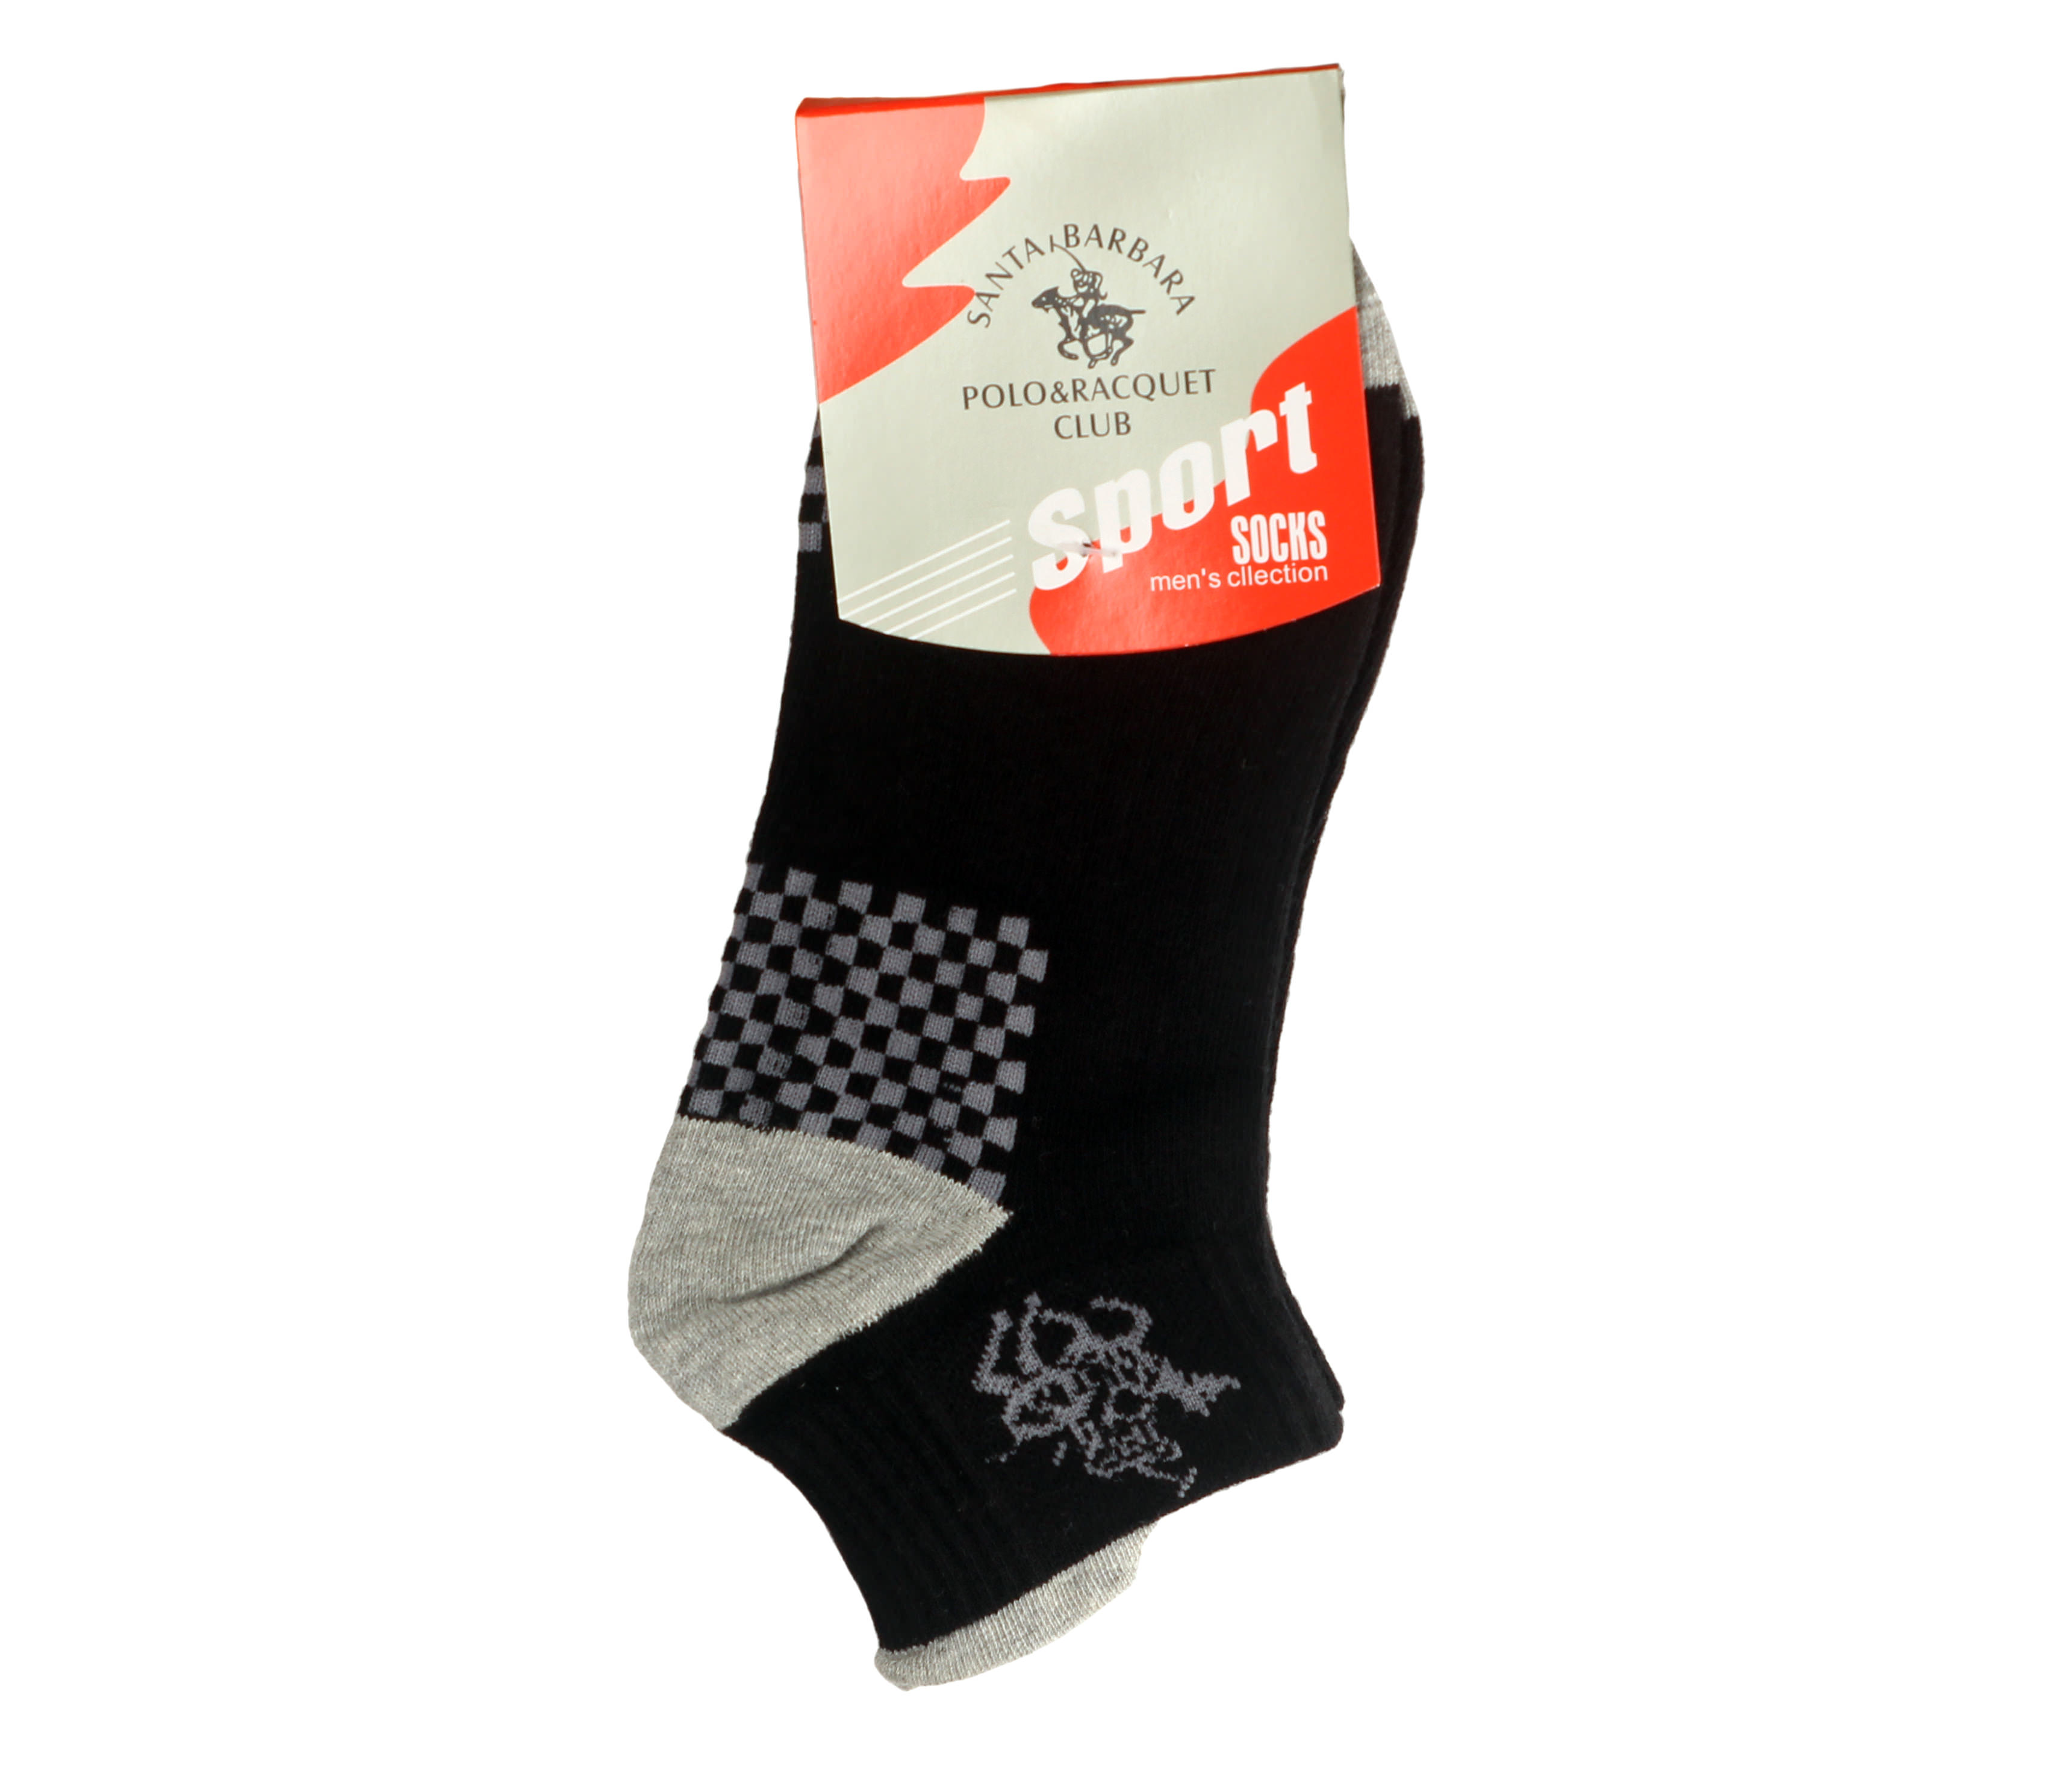 tat-the-thao-santa-barbara-sport-socks-short-5198-wetrek_vn